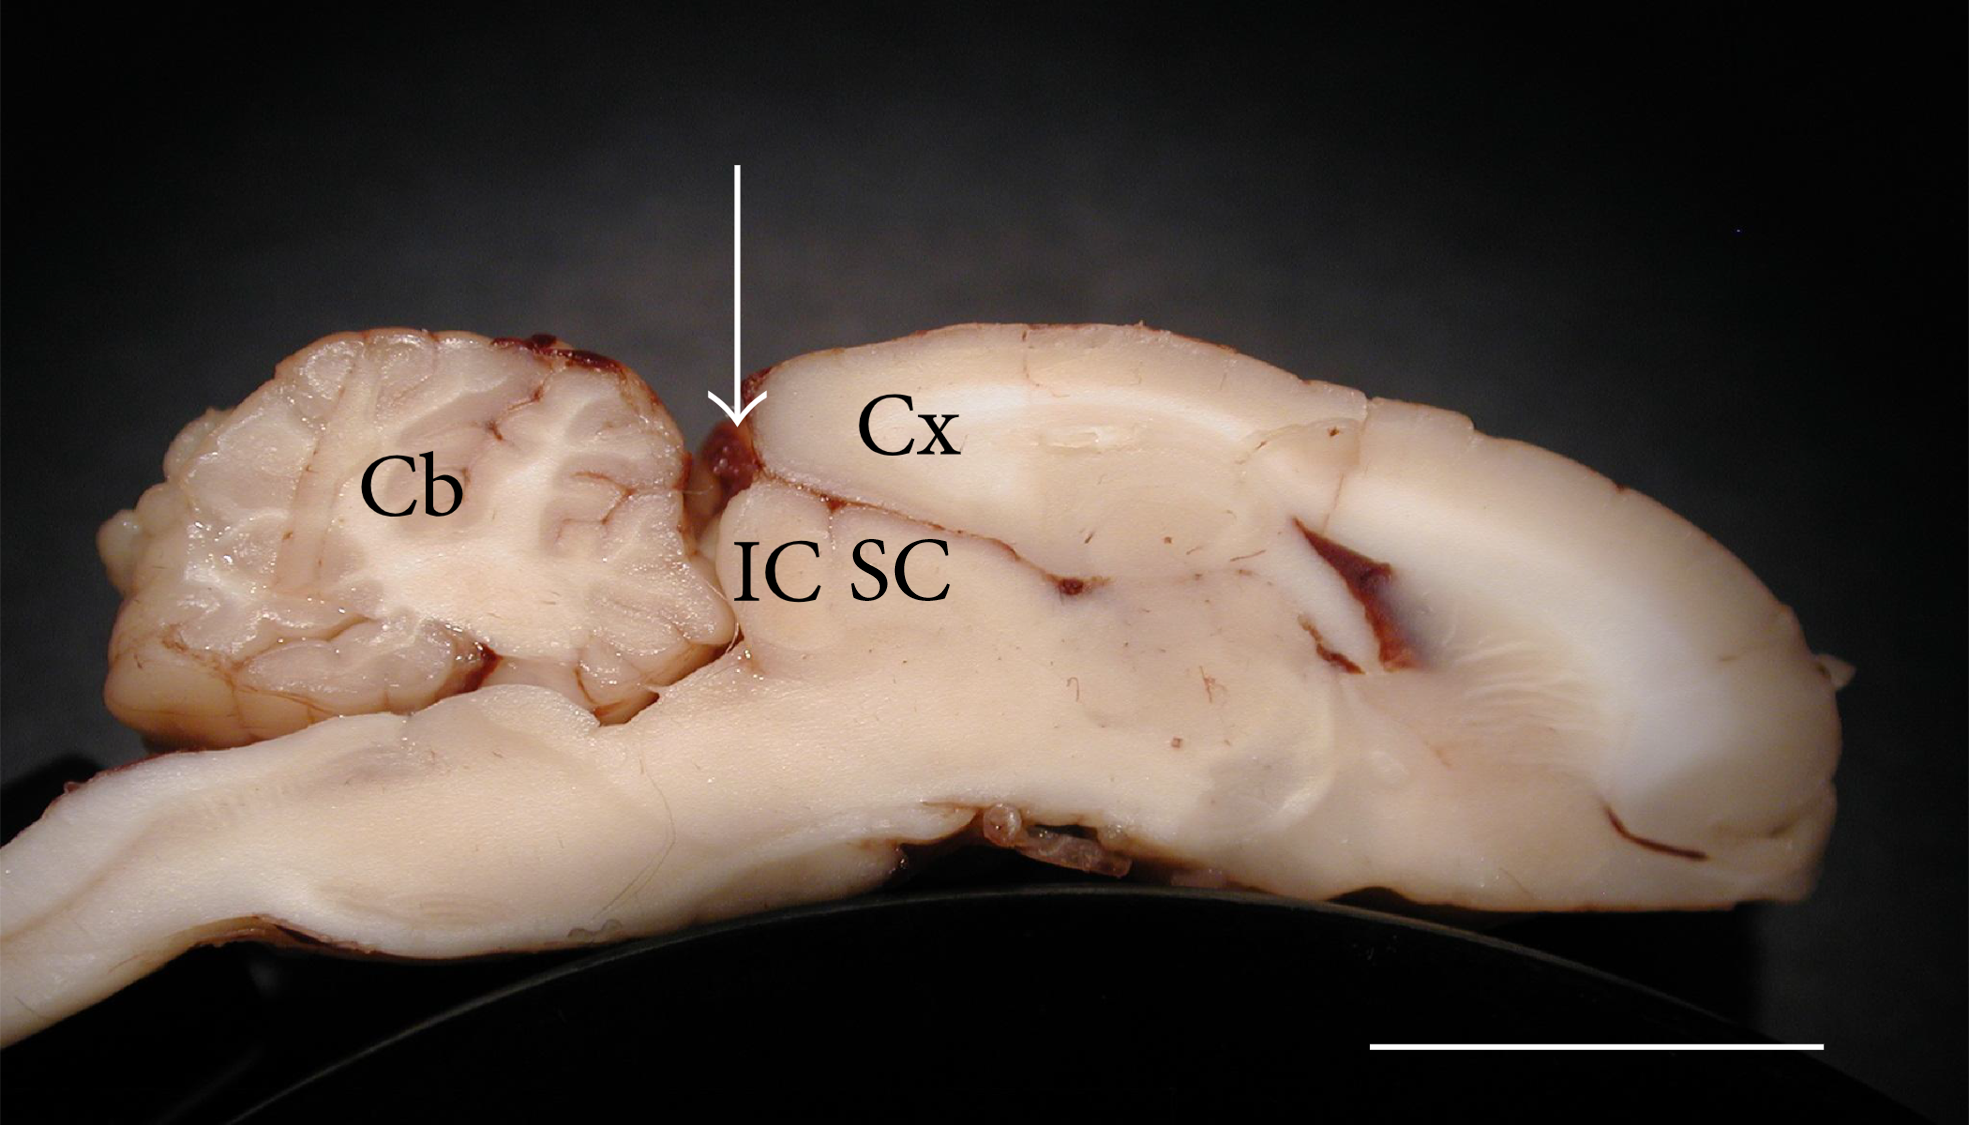 Secció transversal del cervell de la Chinchilla laniger. Abreviatures: IC, col·licle inferior; Cb, cerebel; Cx, integritat del còrtex (cervell); SC, col·licles superiors. Barra d'escala = 1 cm. Modificat de D'Alessandro et al. (2016). DOI: 10.1155/2016/3734646